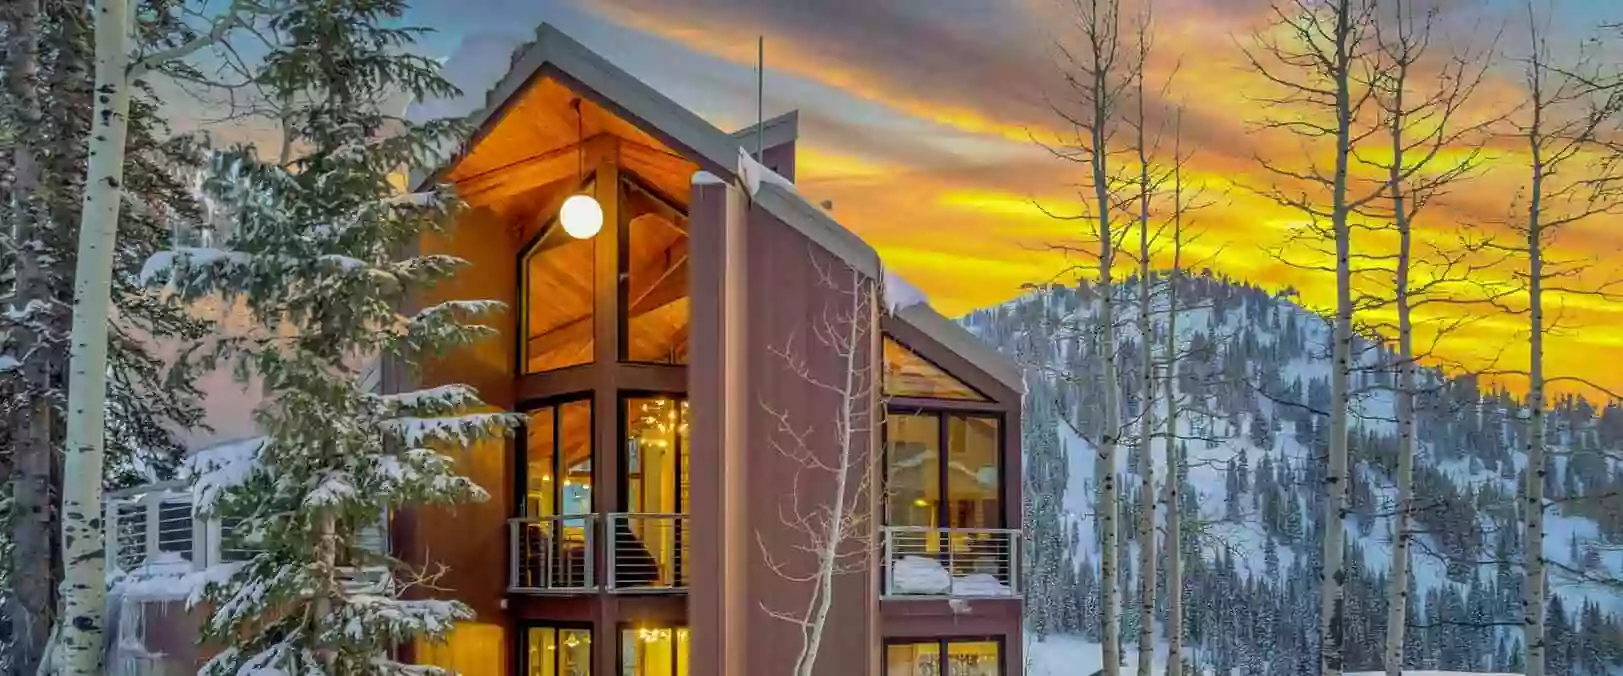 Manley Ski Cabin